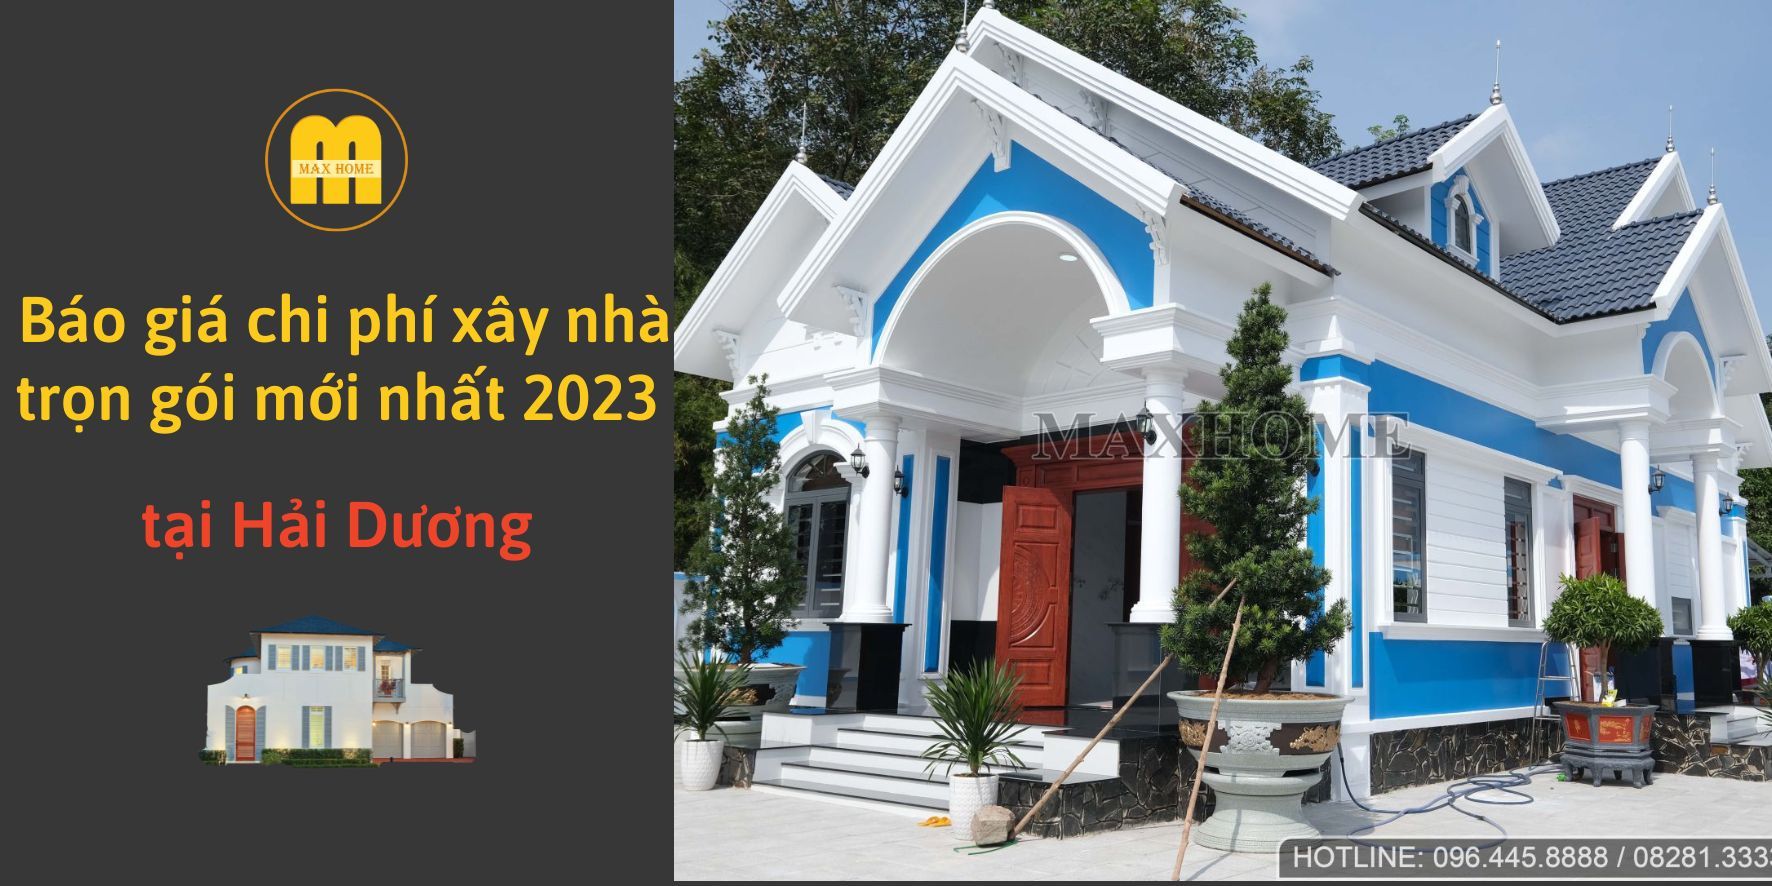 nhung-cong-trinh-nha-dep-tai-hai-duong-bao-gia-thi-cong-tron-goi-2023-1'